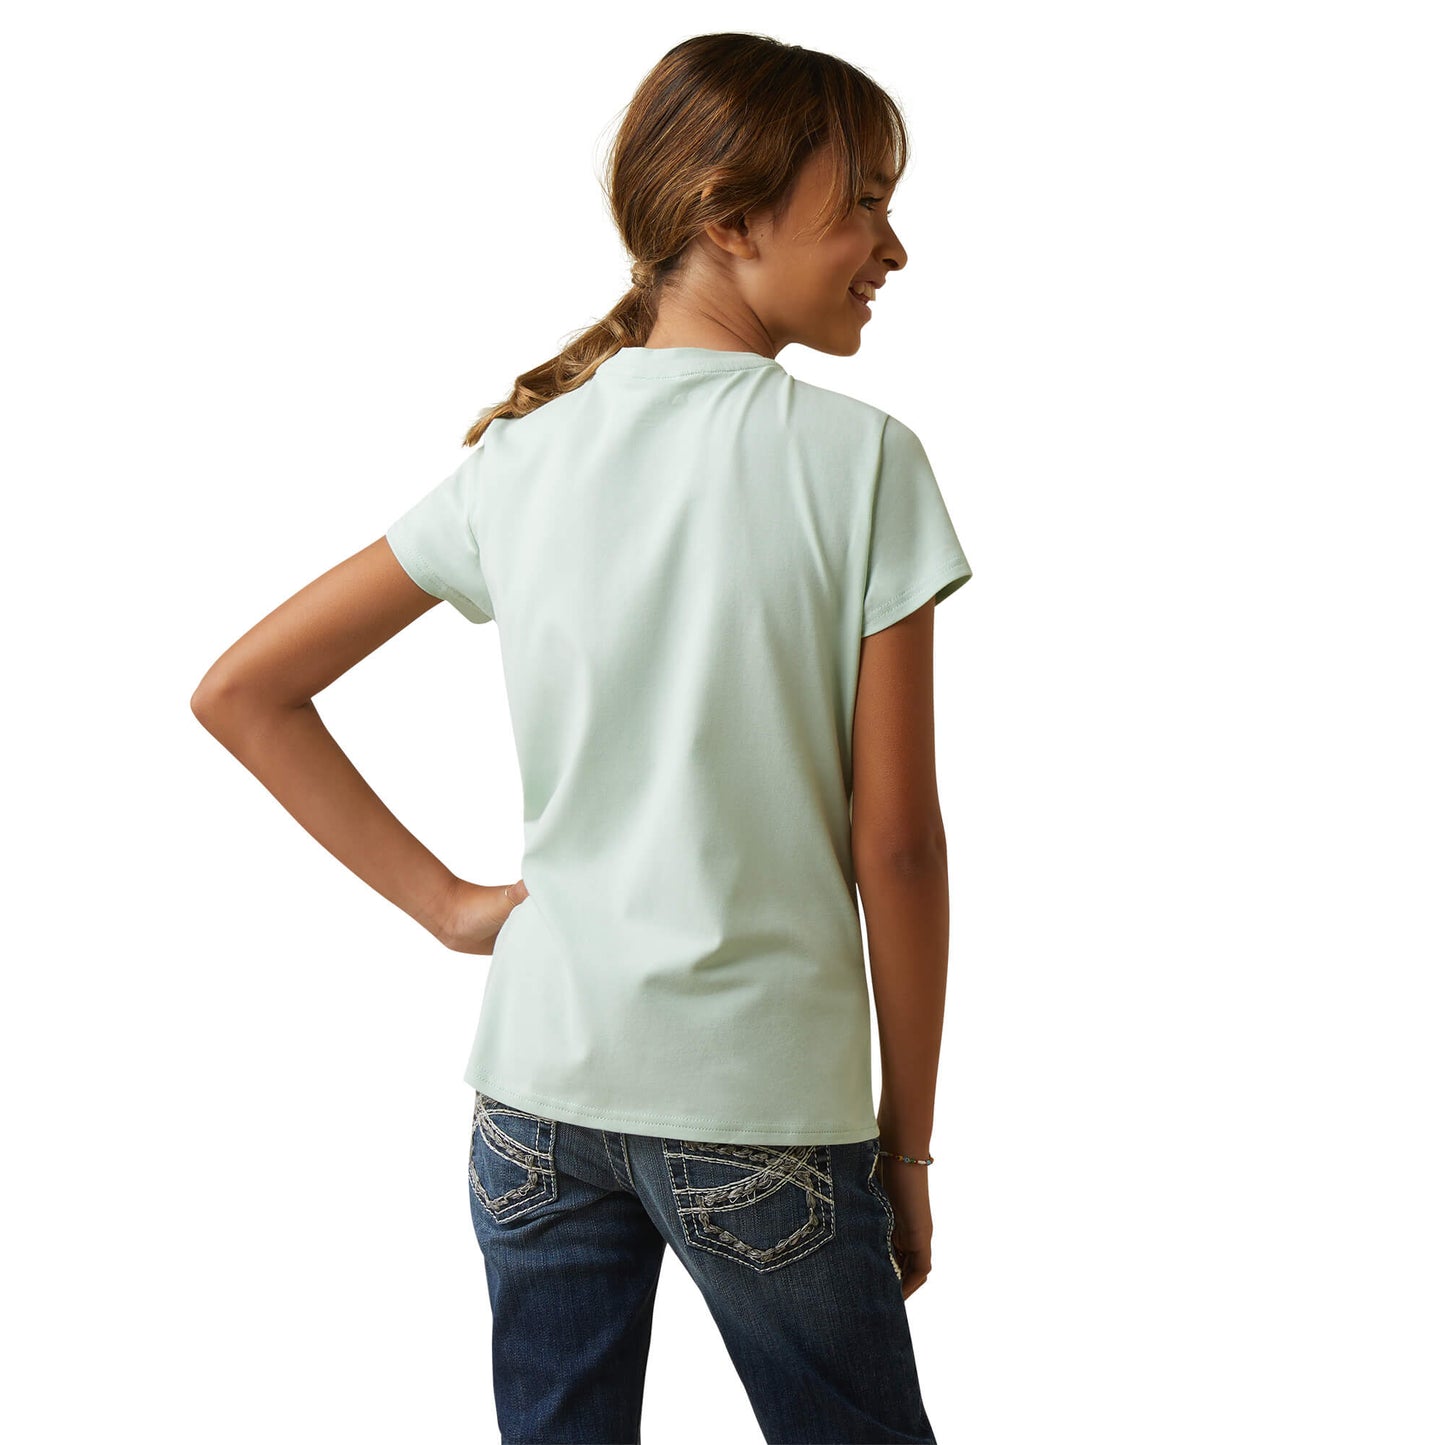 Ariat Youth Harmony Short Sleeve T-Shirt